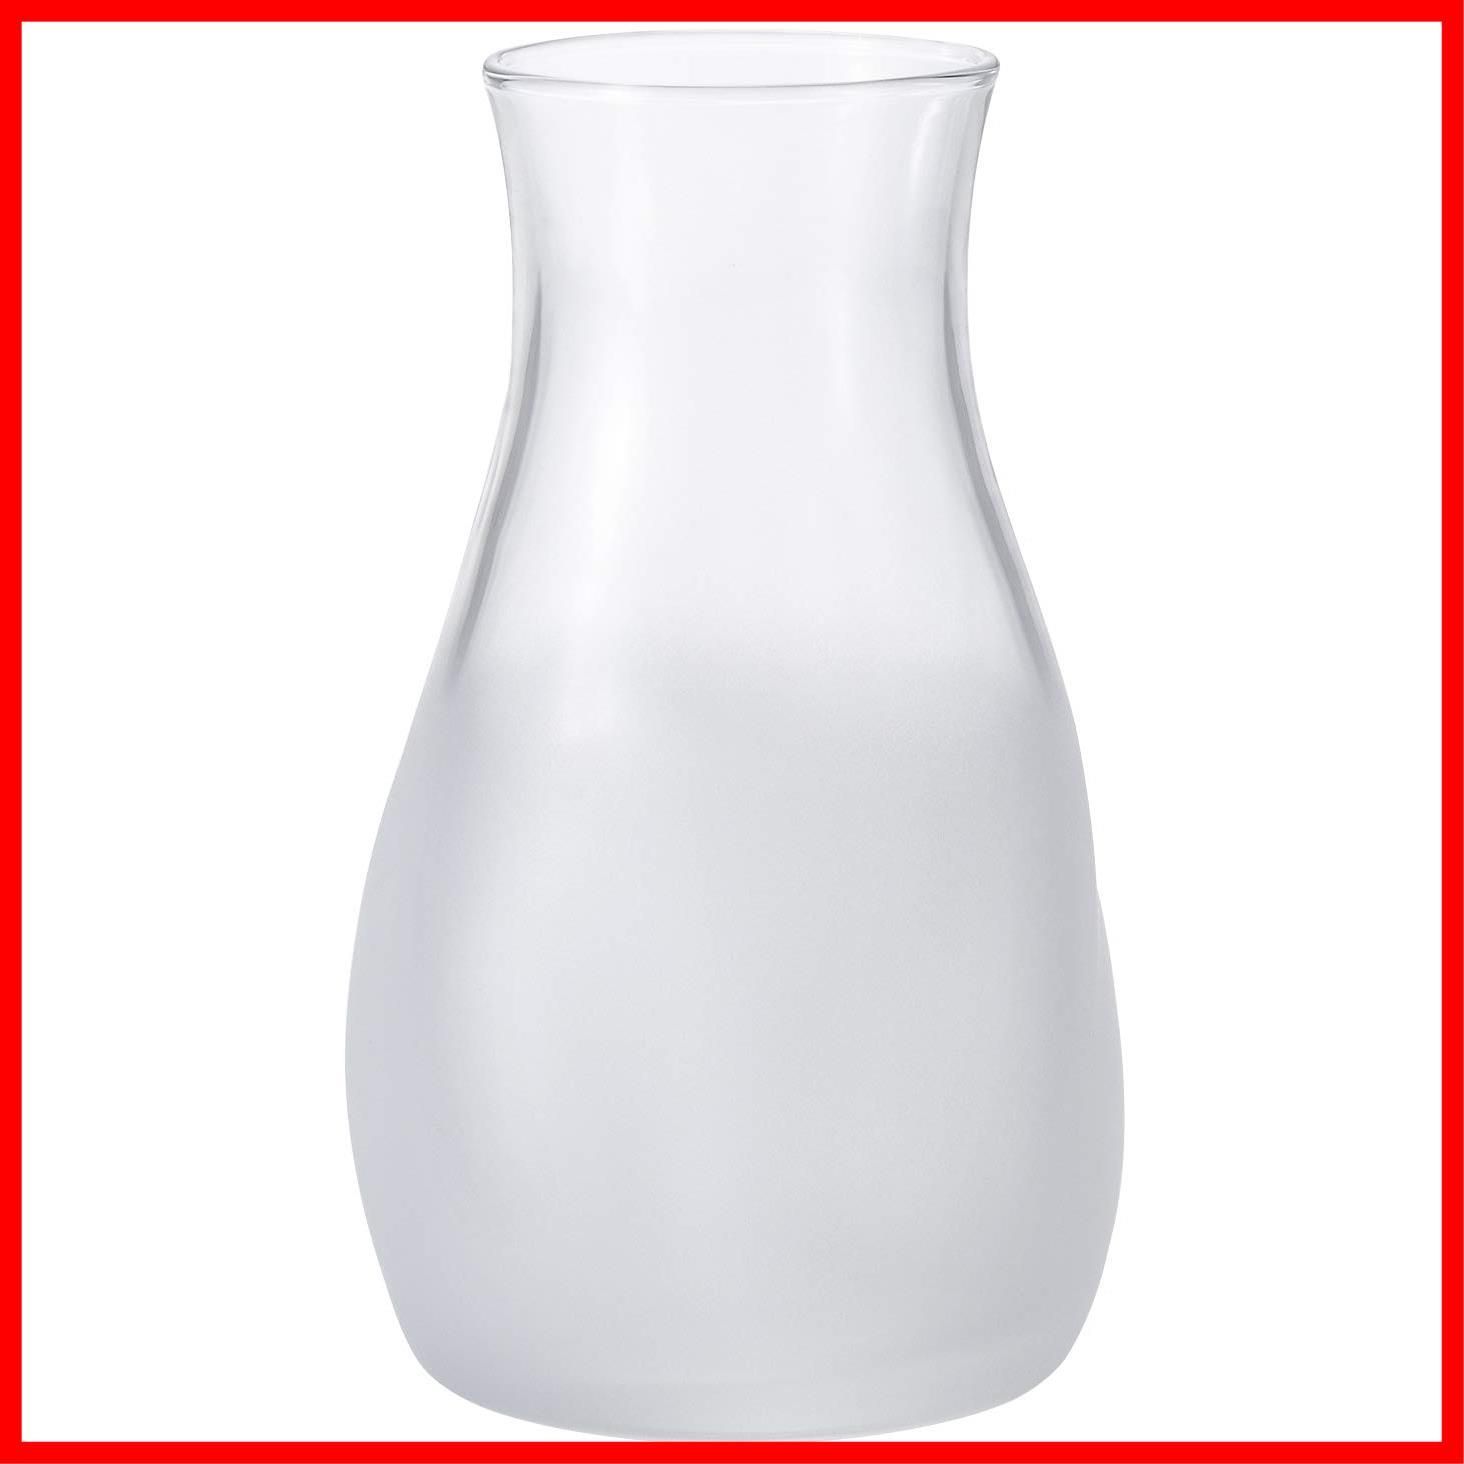 迅速発送アデリア(ADERIA) 花瓶 ガラス花瓶 てびねりミニ花器 ホワイト 直径約7.7x高さ12.9cm 日本製 9571 - メルカリ